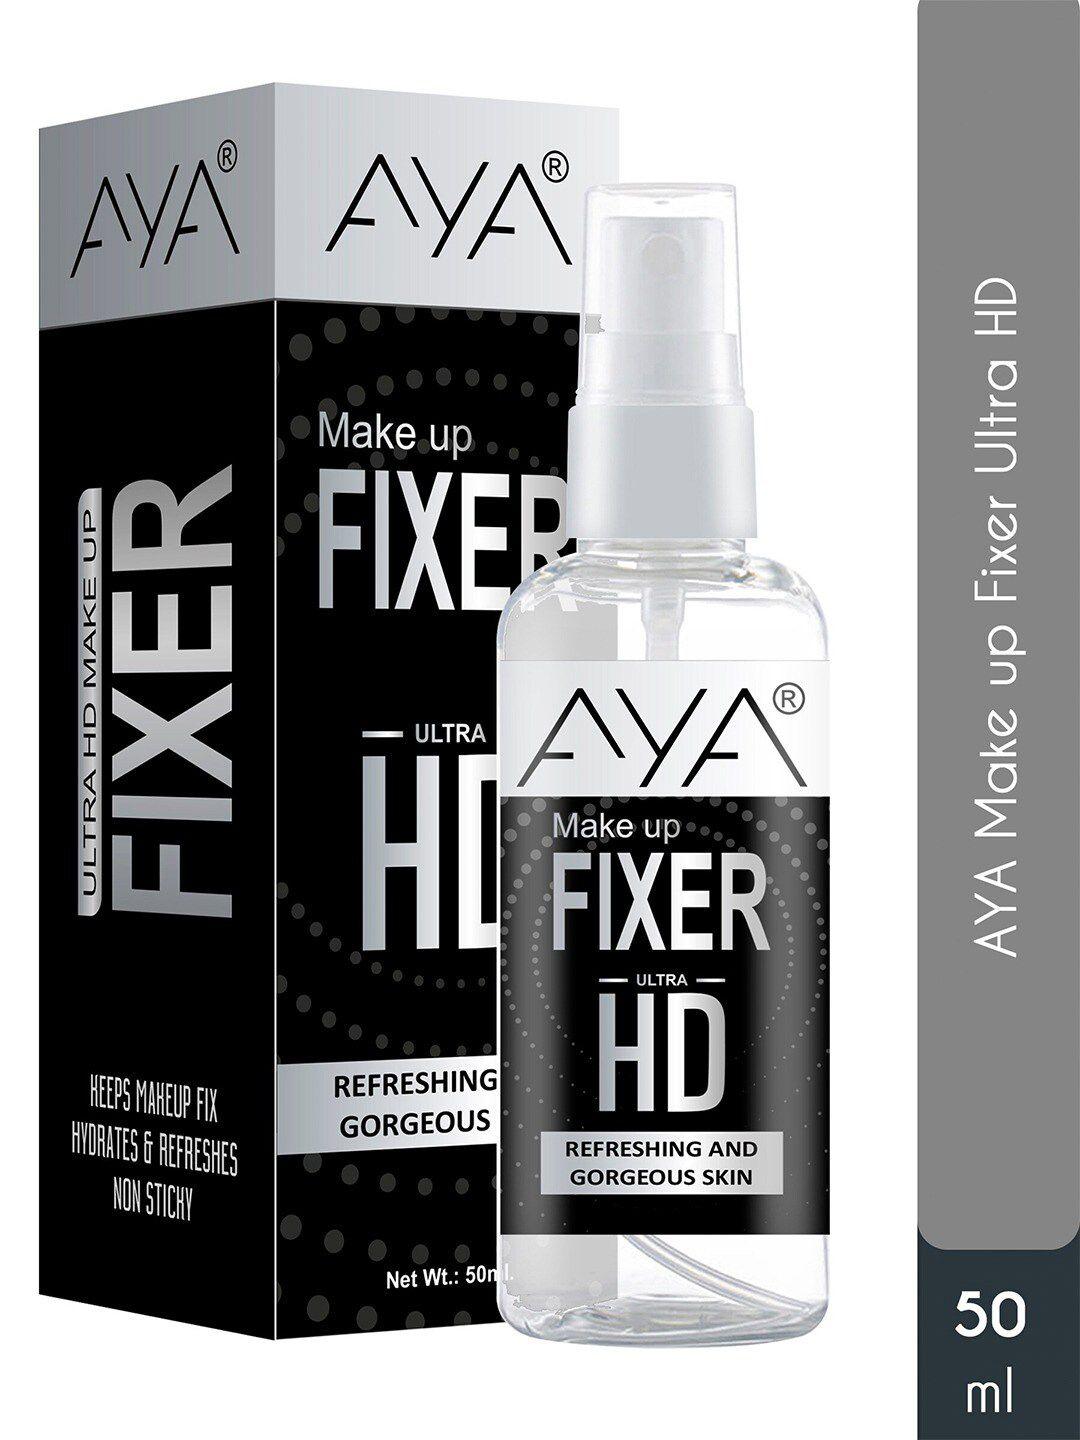 aya-ultra-hd-makeup-fixer-for-refreshing-&-gorgeous-skin---50-ml